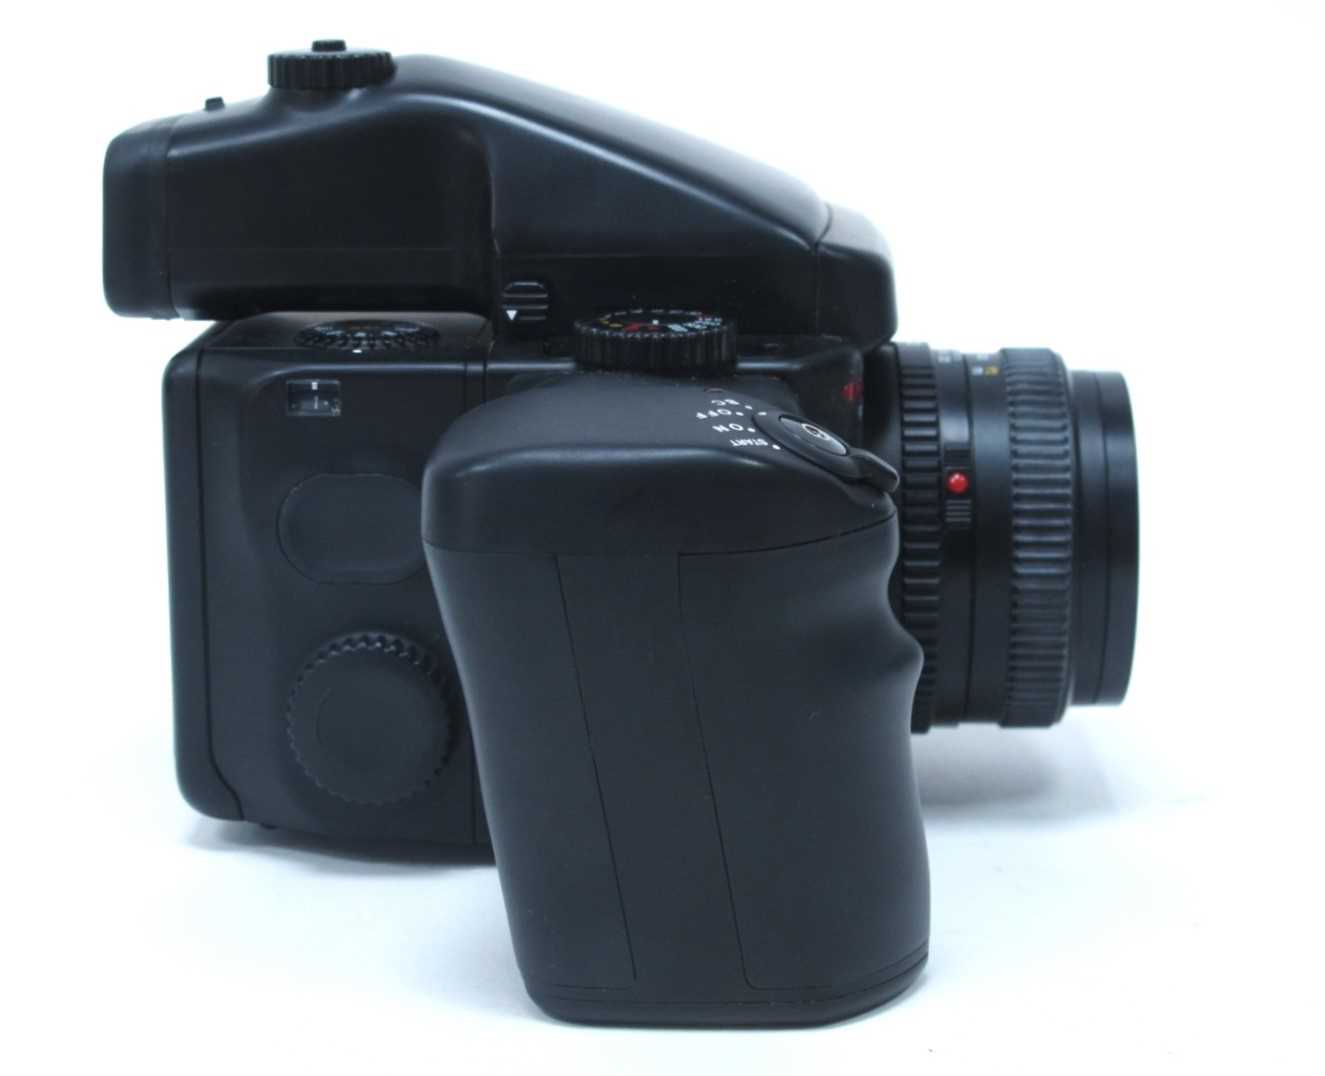 Mamiya 645 Pro Camera, having Mamiya - Sekor 80mm lens 1:2.8, extra 150mm 1:3.5 and 55mm 1:2.8 - Image 5 of 10